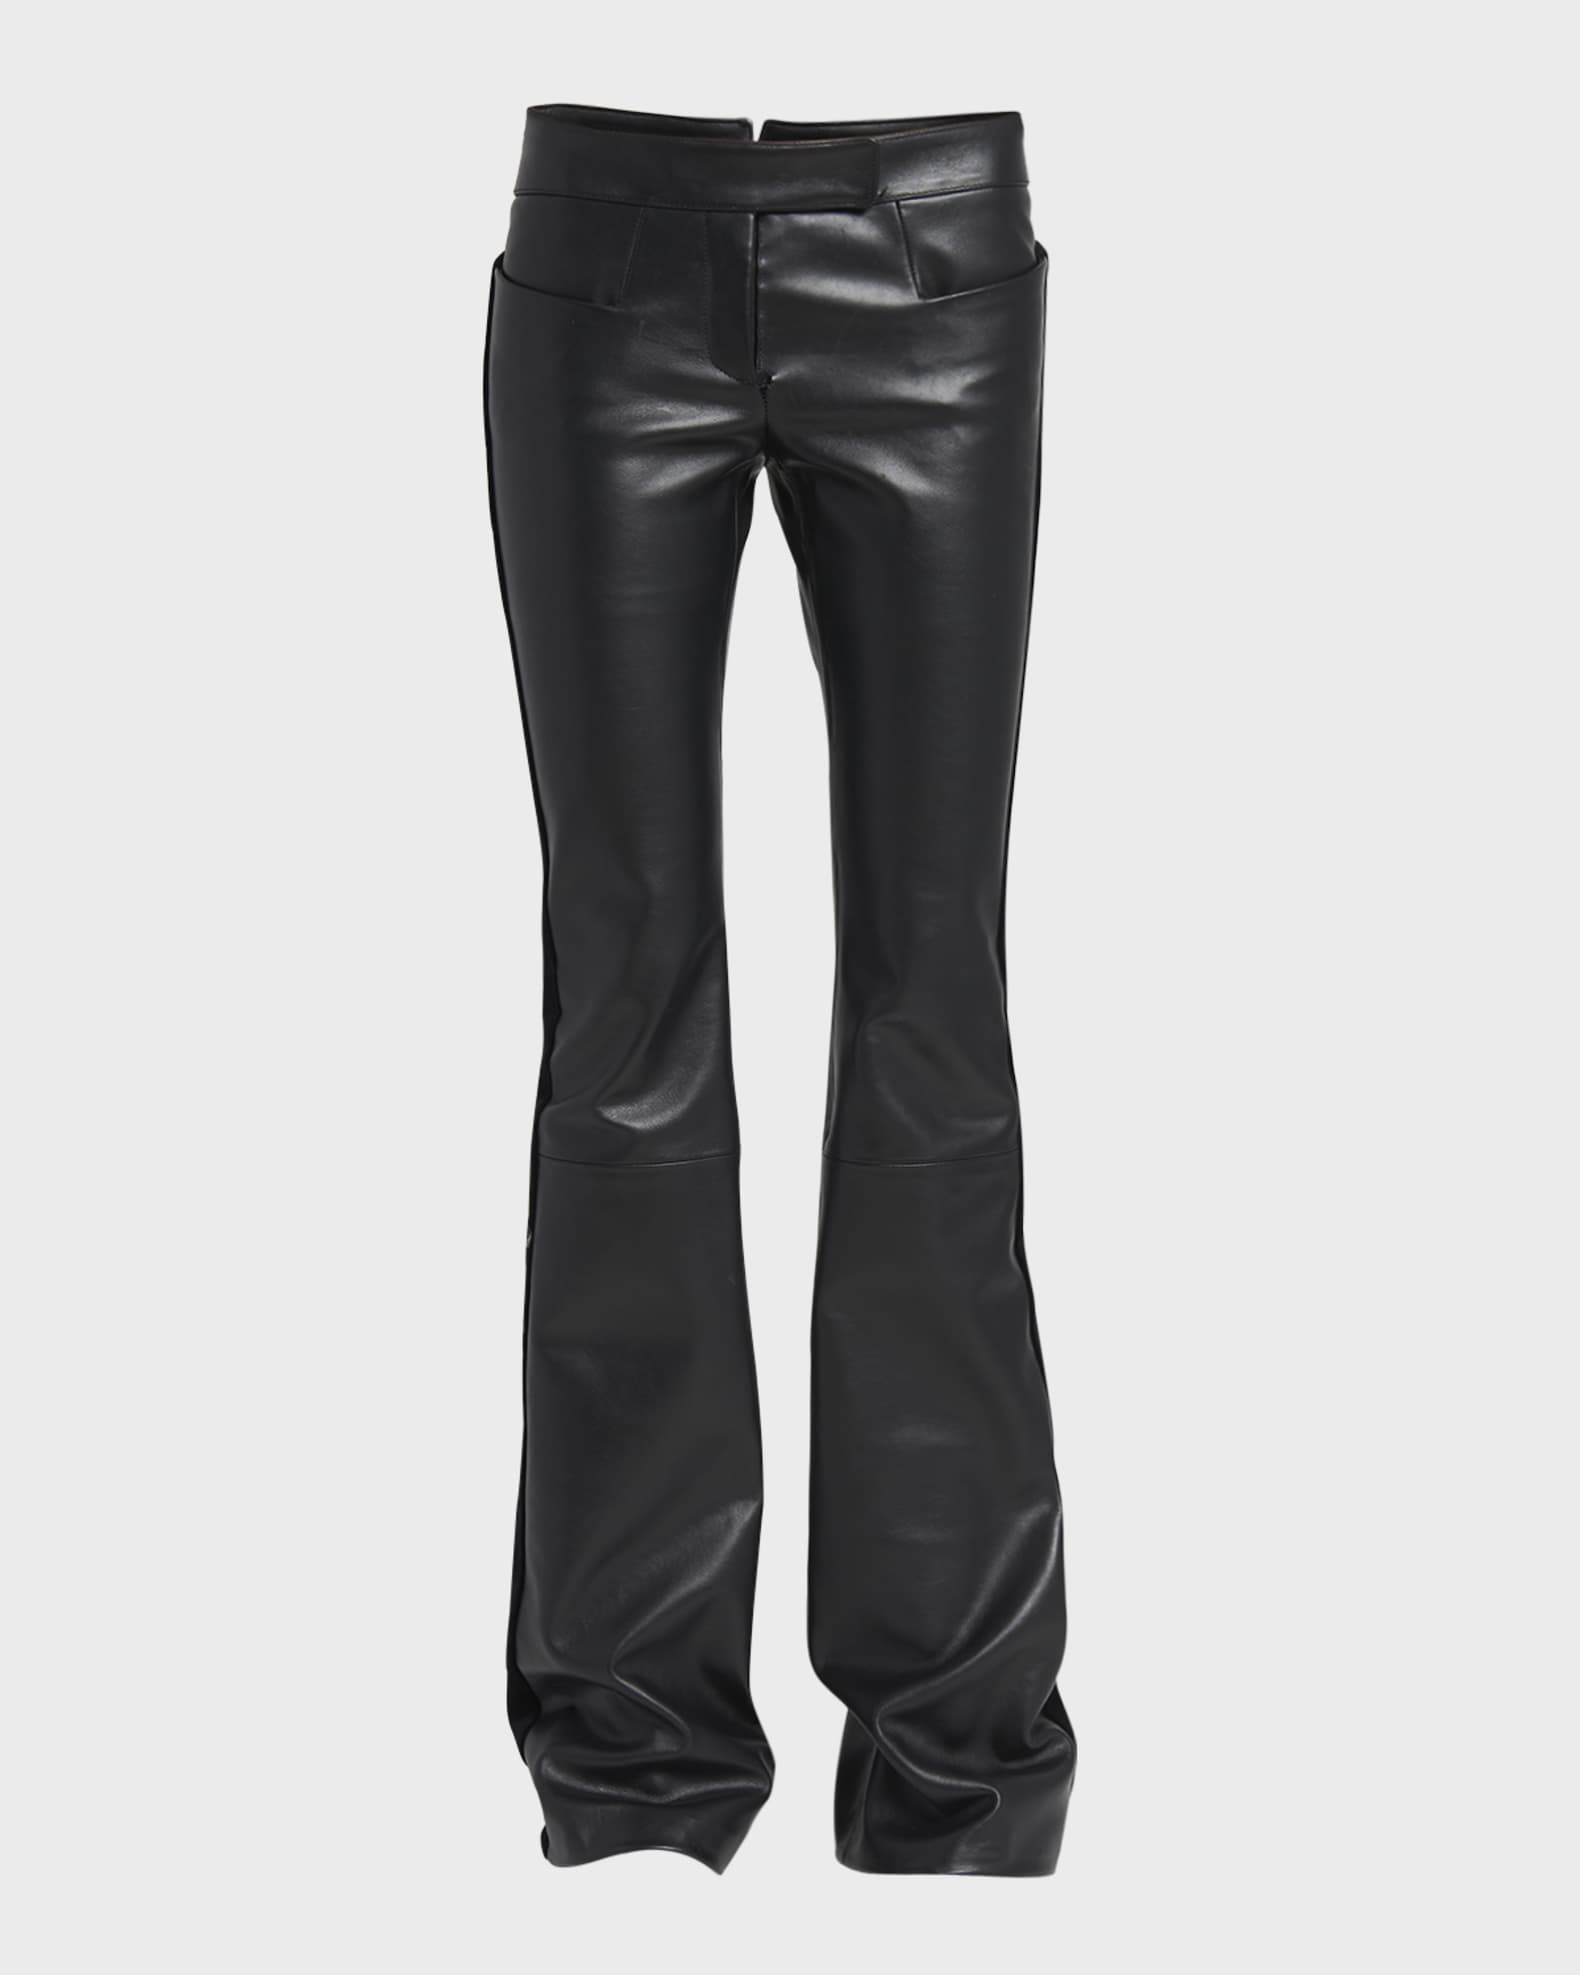 TOM FORD Velvet Side-Stripe Flared Leather Pants | Neiman Marcus